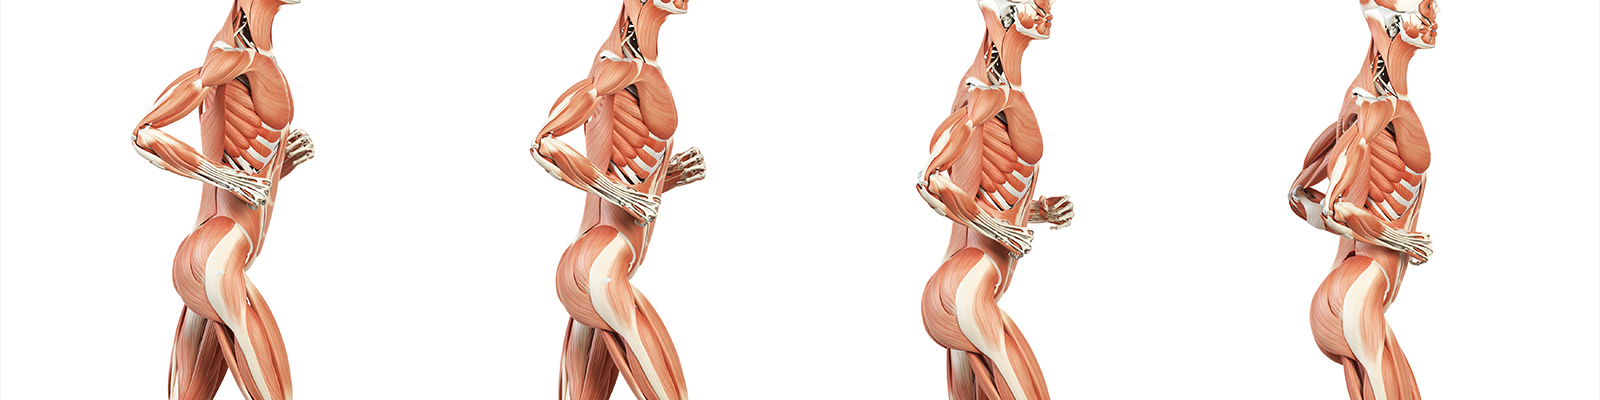 Componentes y estructuras musculares